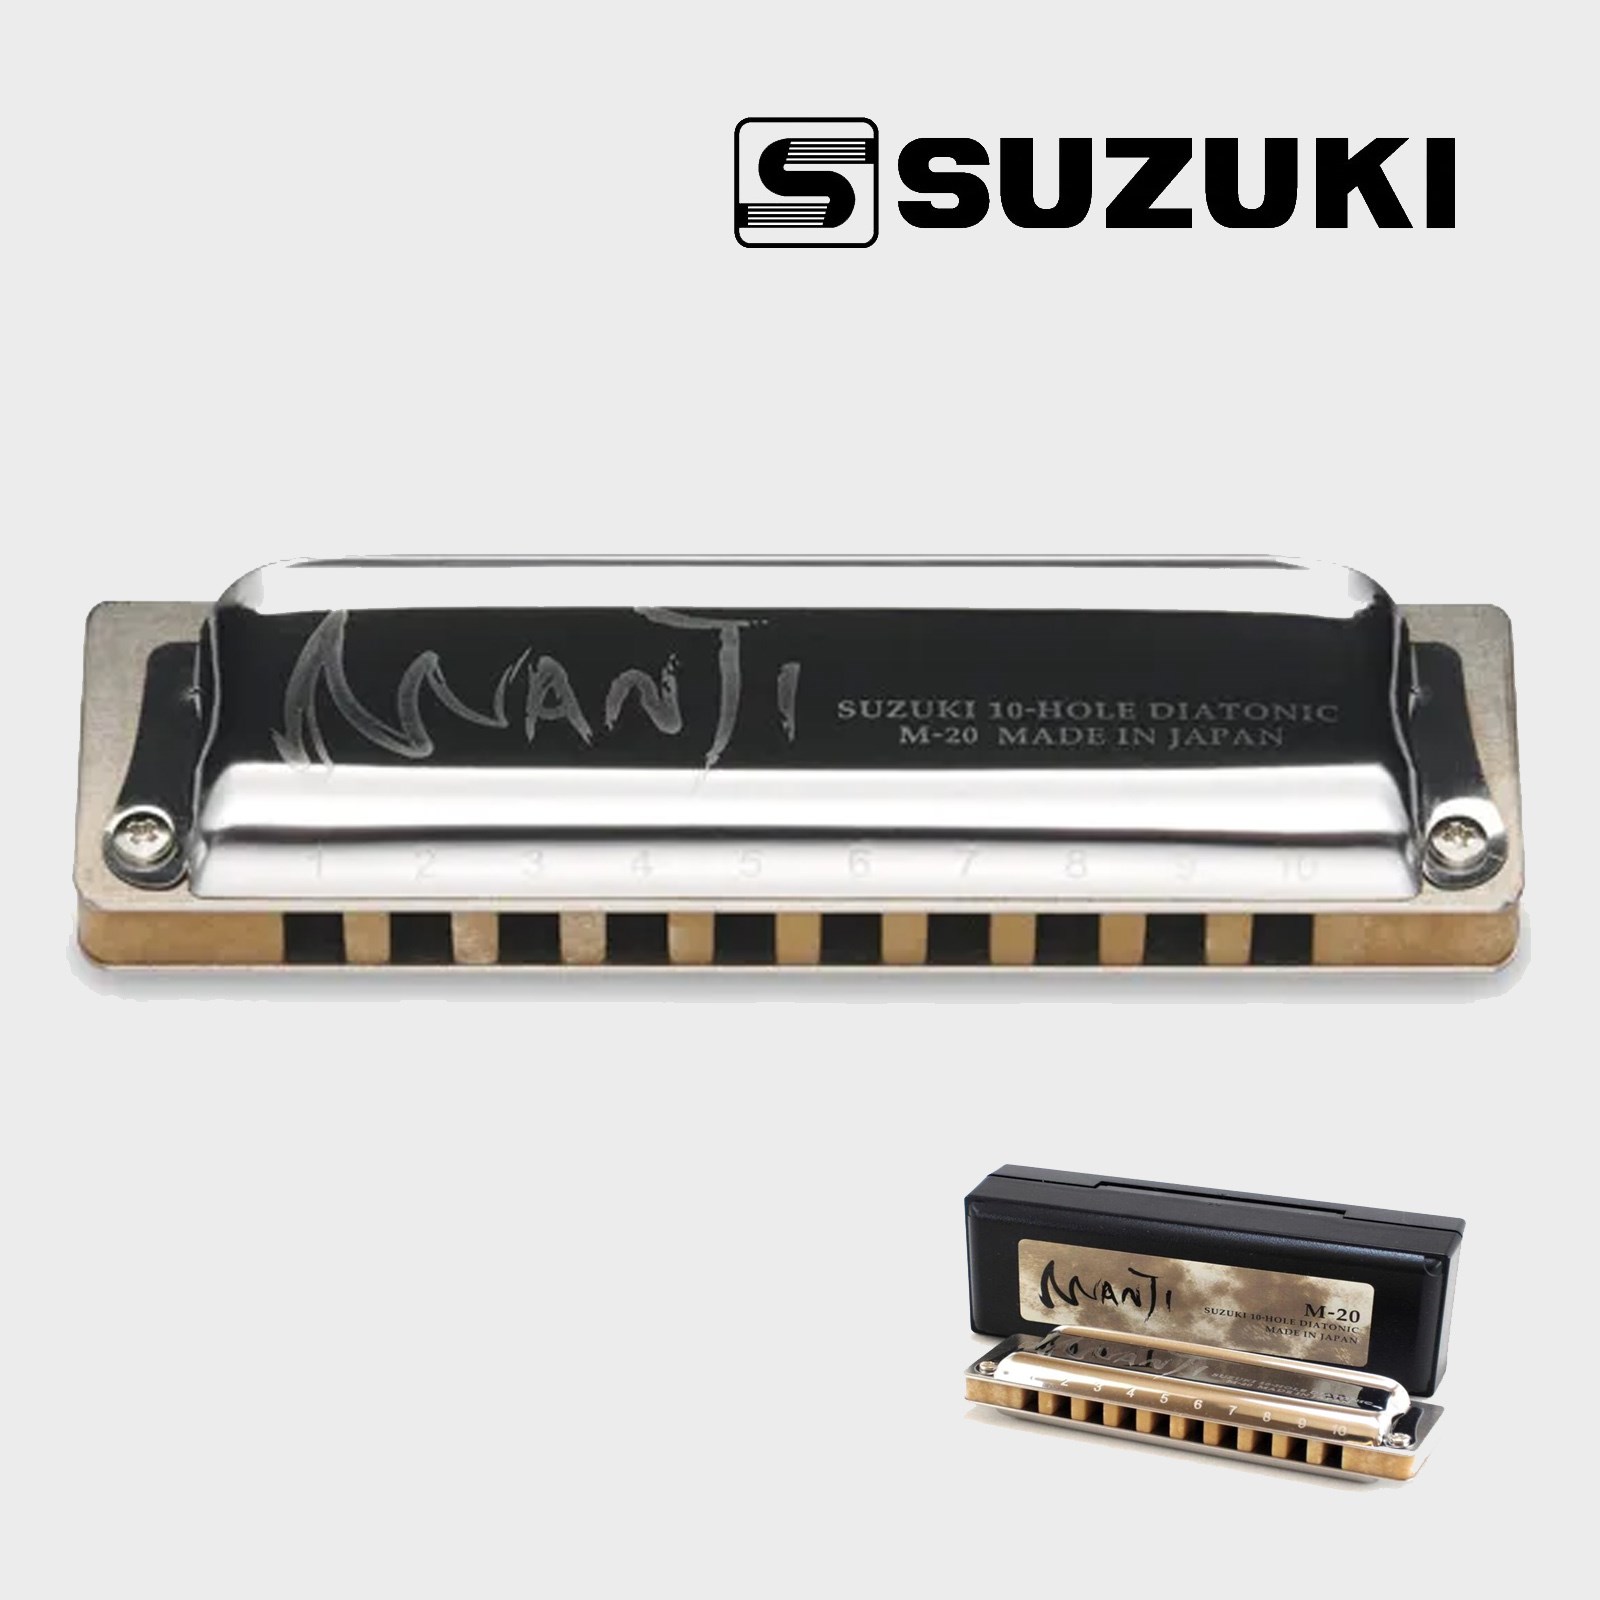 Suzuki Manji key of C